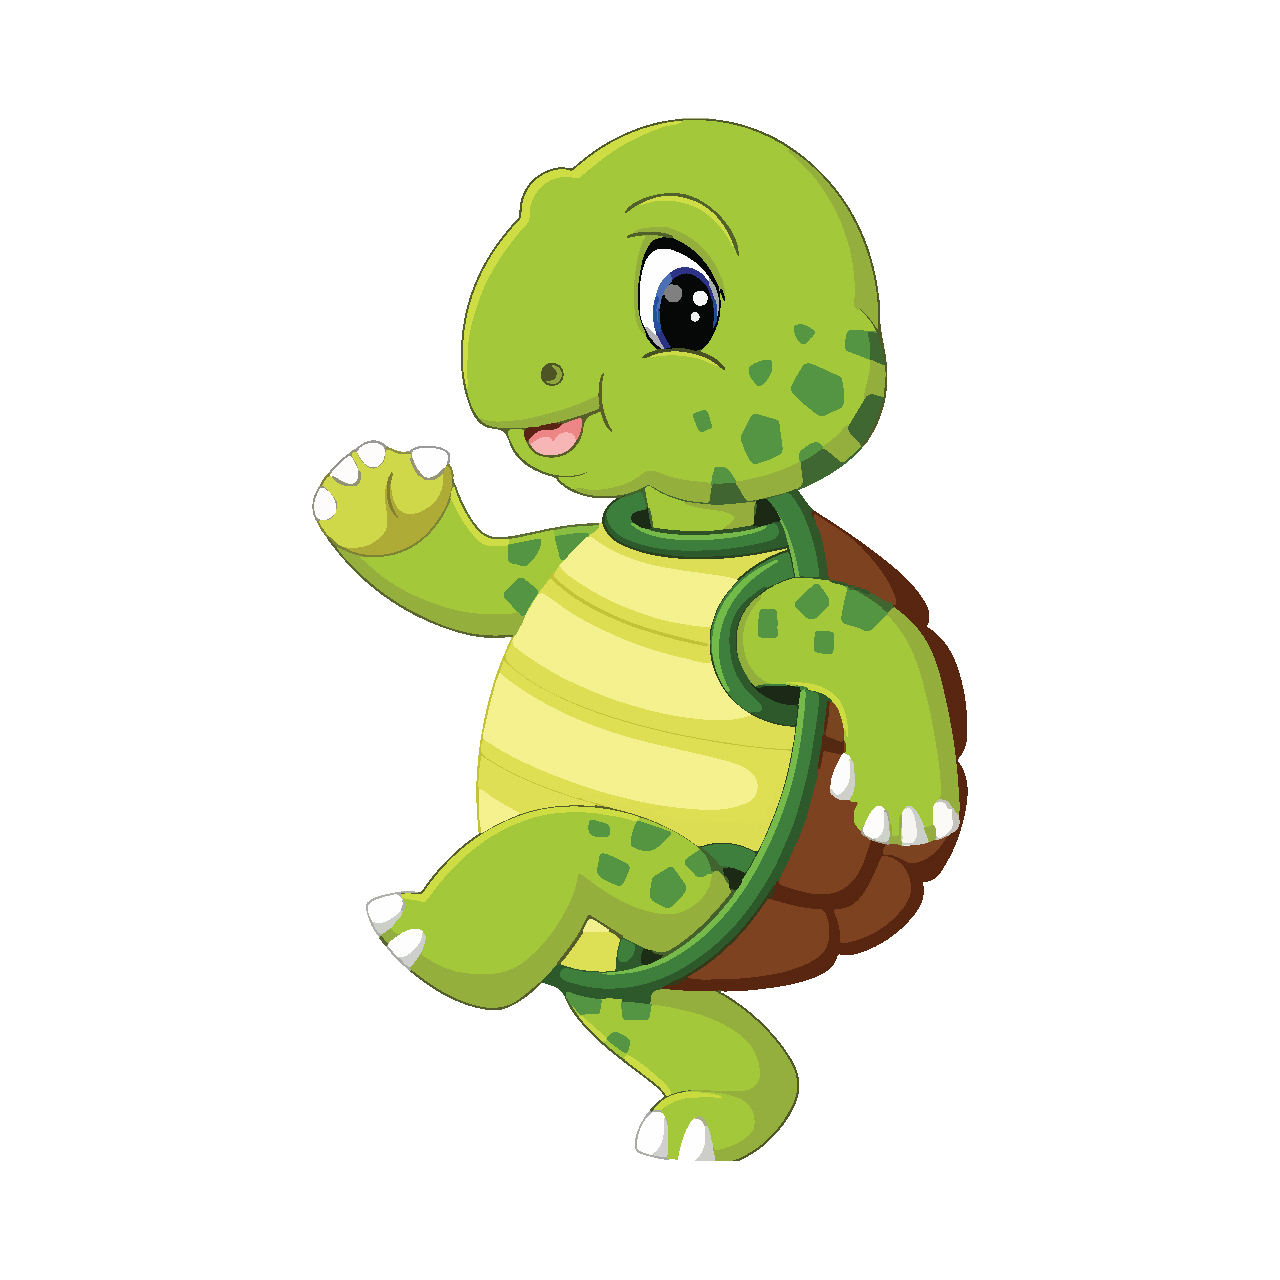 Hình con rùa hoạt hình: Hãy ngắm một bức tranh đầy màu sắc với hình ảnh của một con rùa hoạt hình. Điều này sẽ khiến bạn cảm thấy thư giãn và vui vẻ khi nhìn thấy những chi tiết tuyệt vời trên chiếc vỏ sặc sỡ của chú rùa.